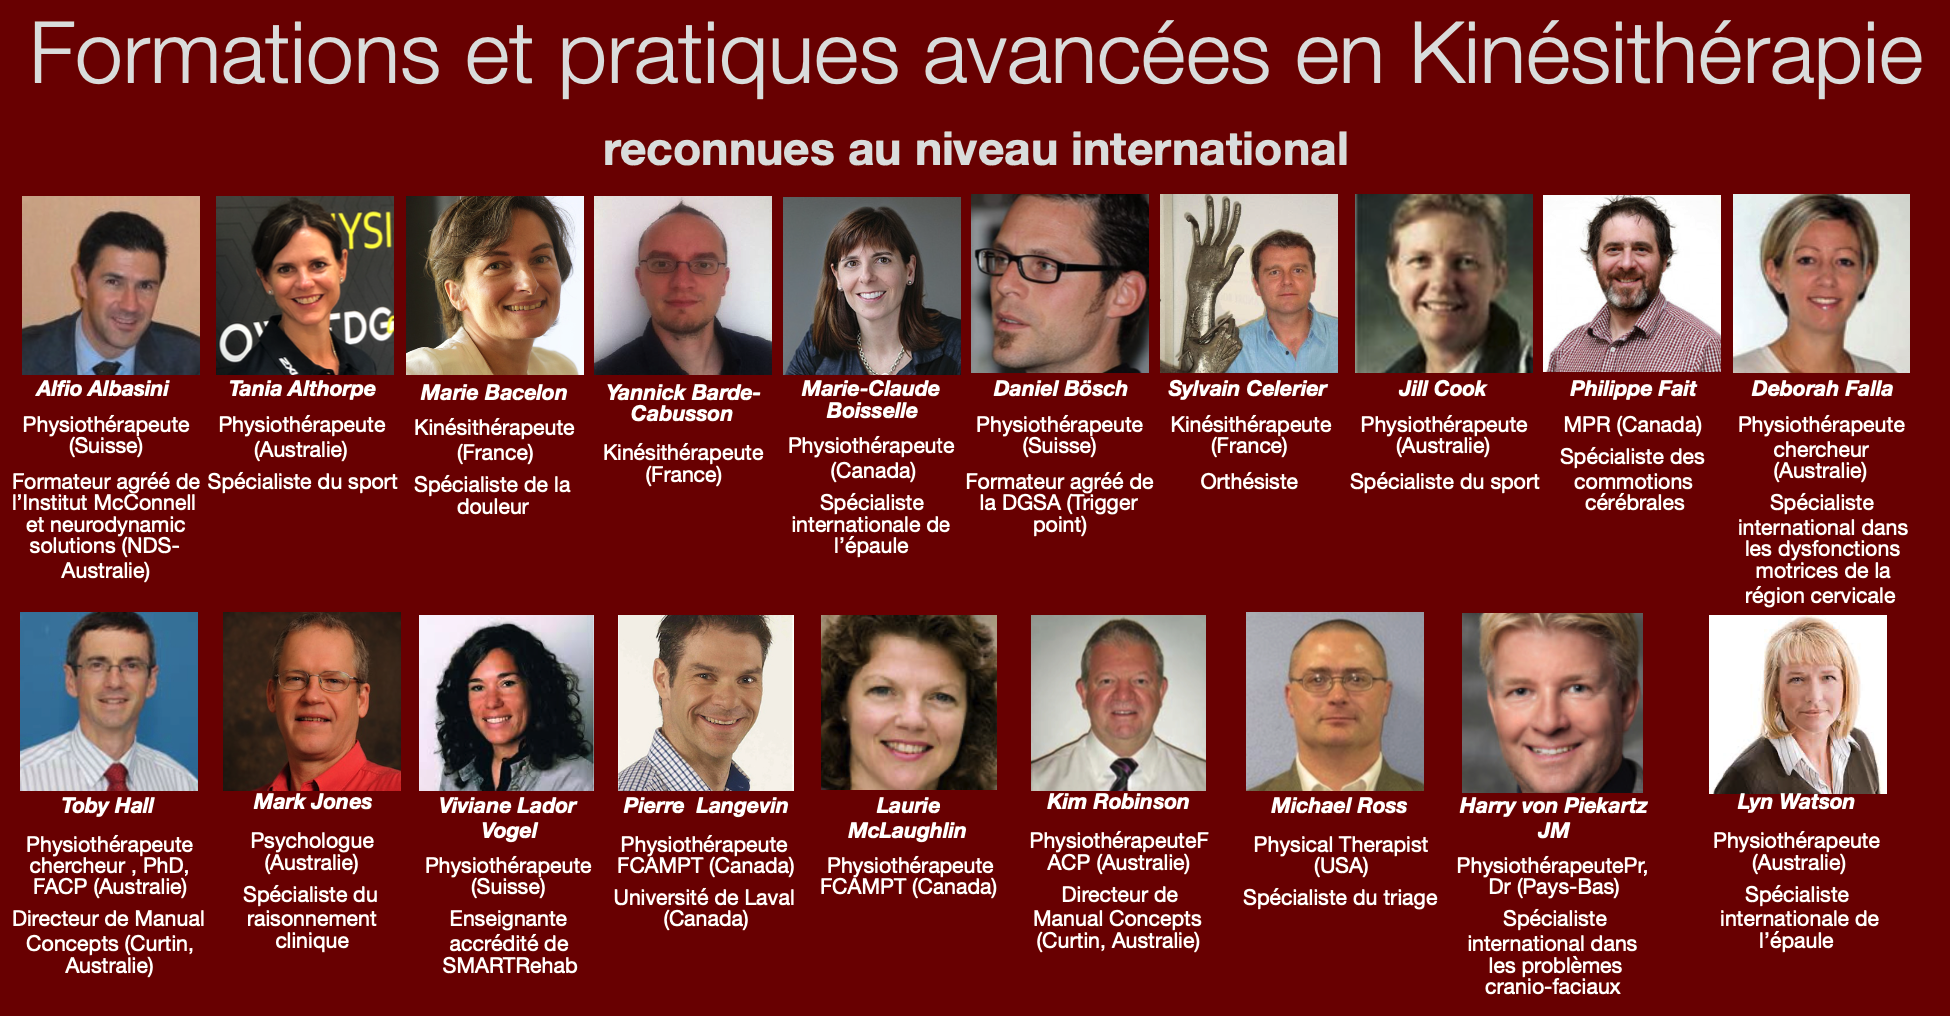 Kpten 2010-2020 - 3e projet: Définir des standards en formation continue qui serviront de modèles ou permettront de tirer vers le haut la qualité de la formation continue en France